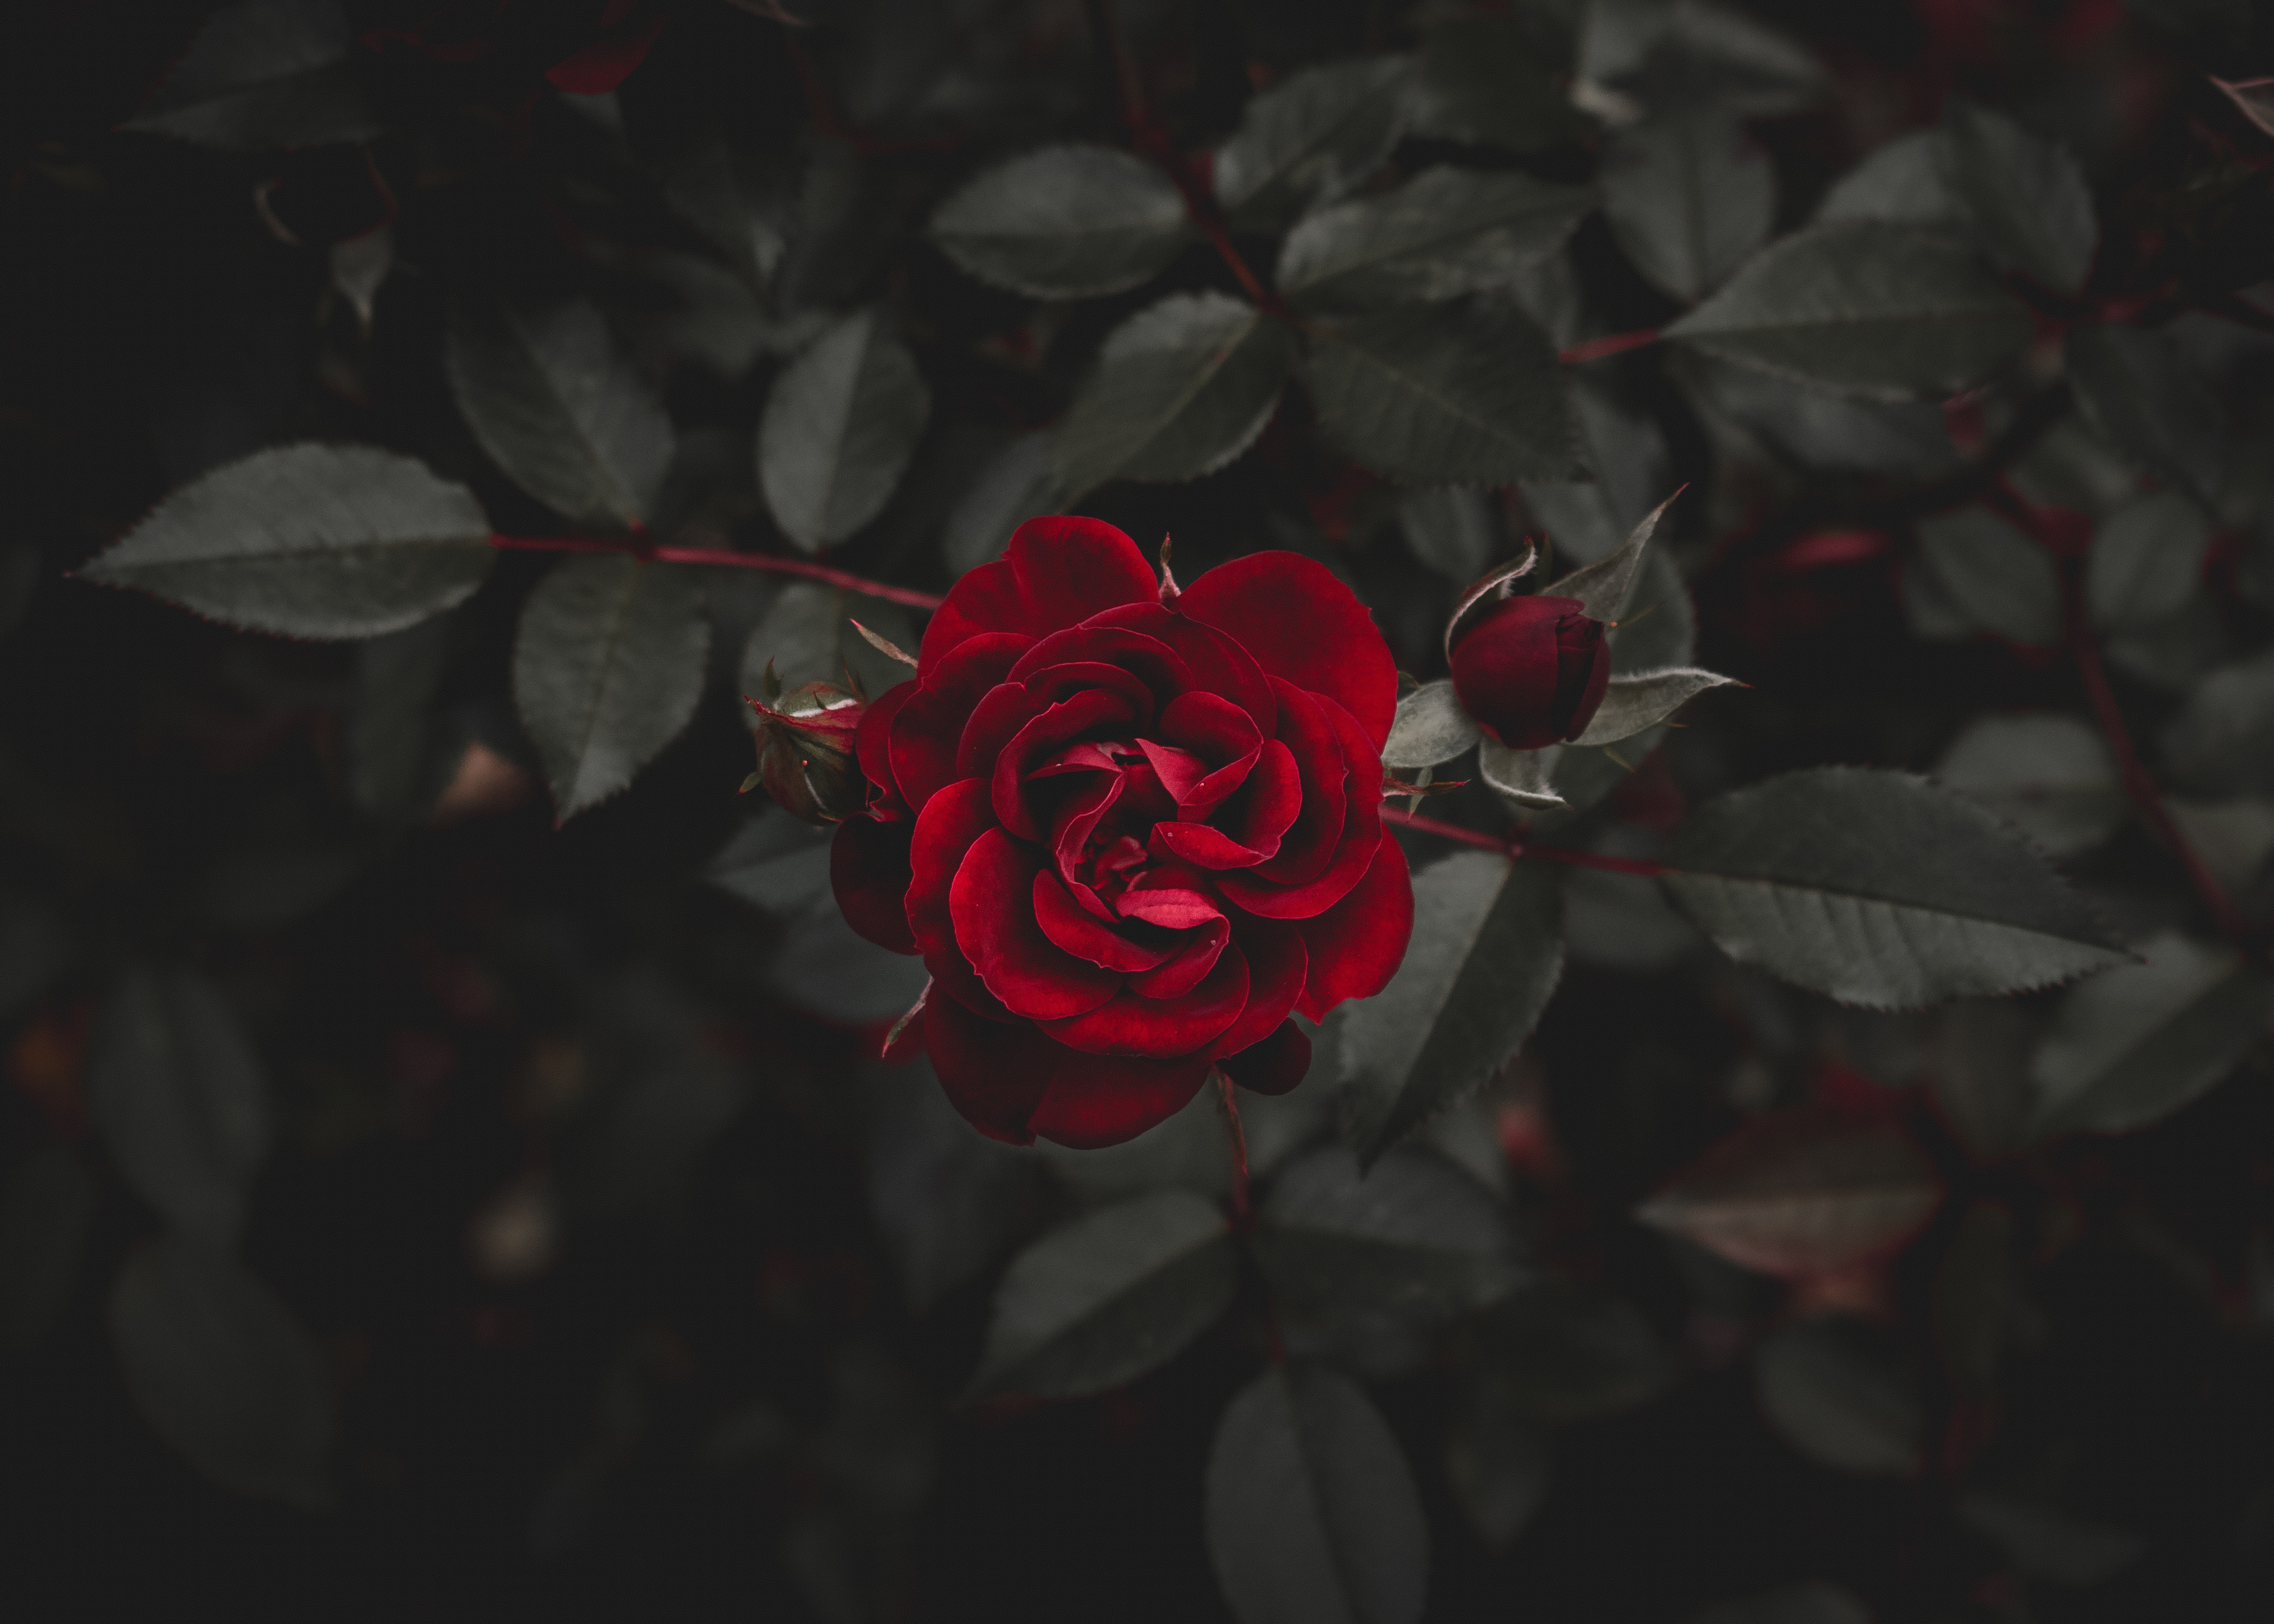 rose, flowers, rose flower, flower, red, bud cellphone